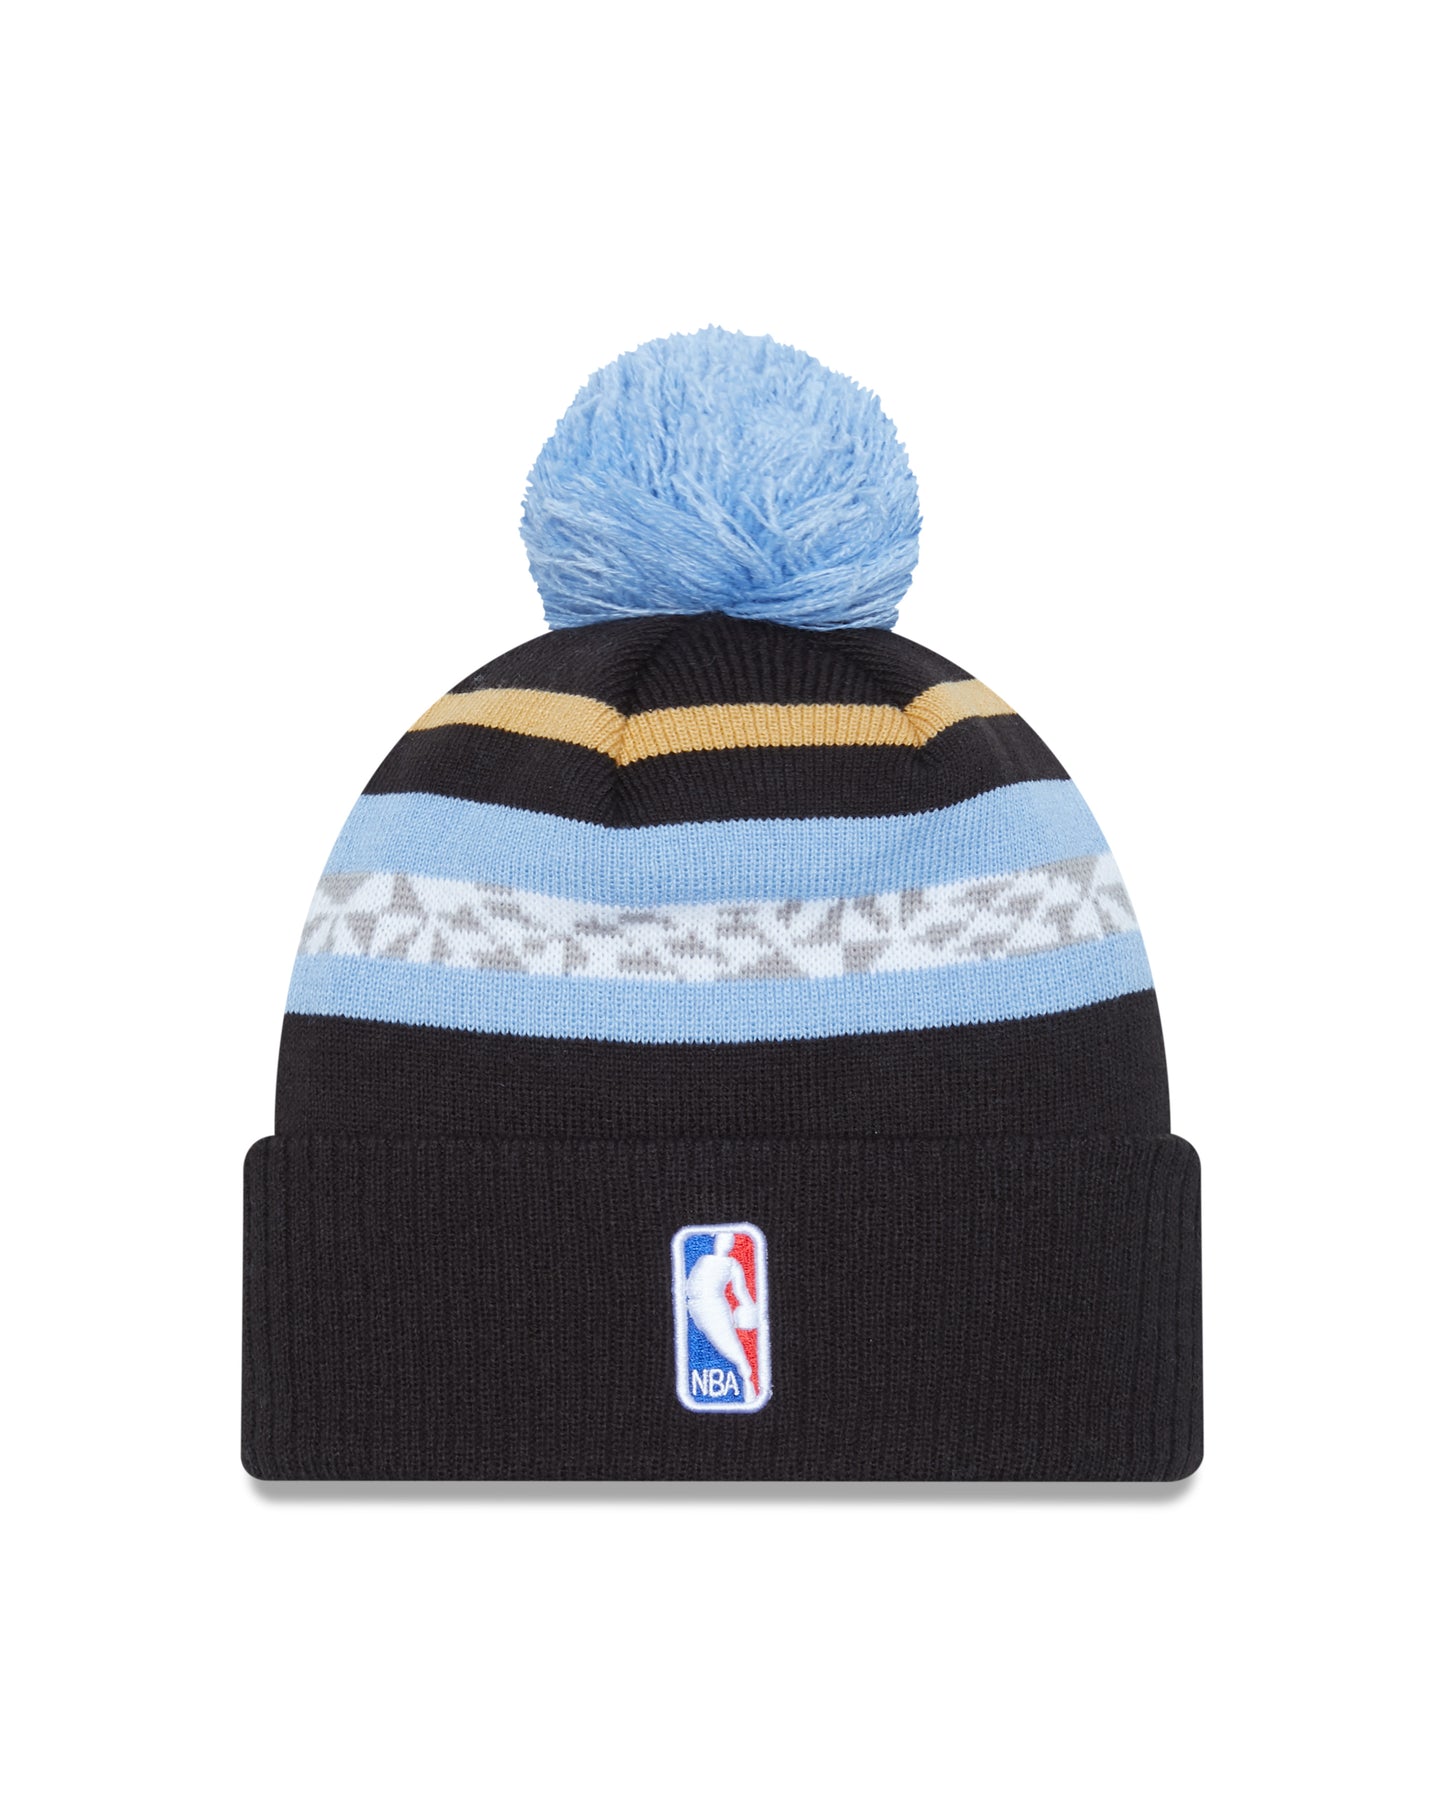 Memphis Grizzlies New Era City Edition Knit Hat